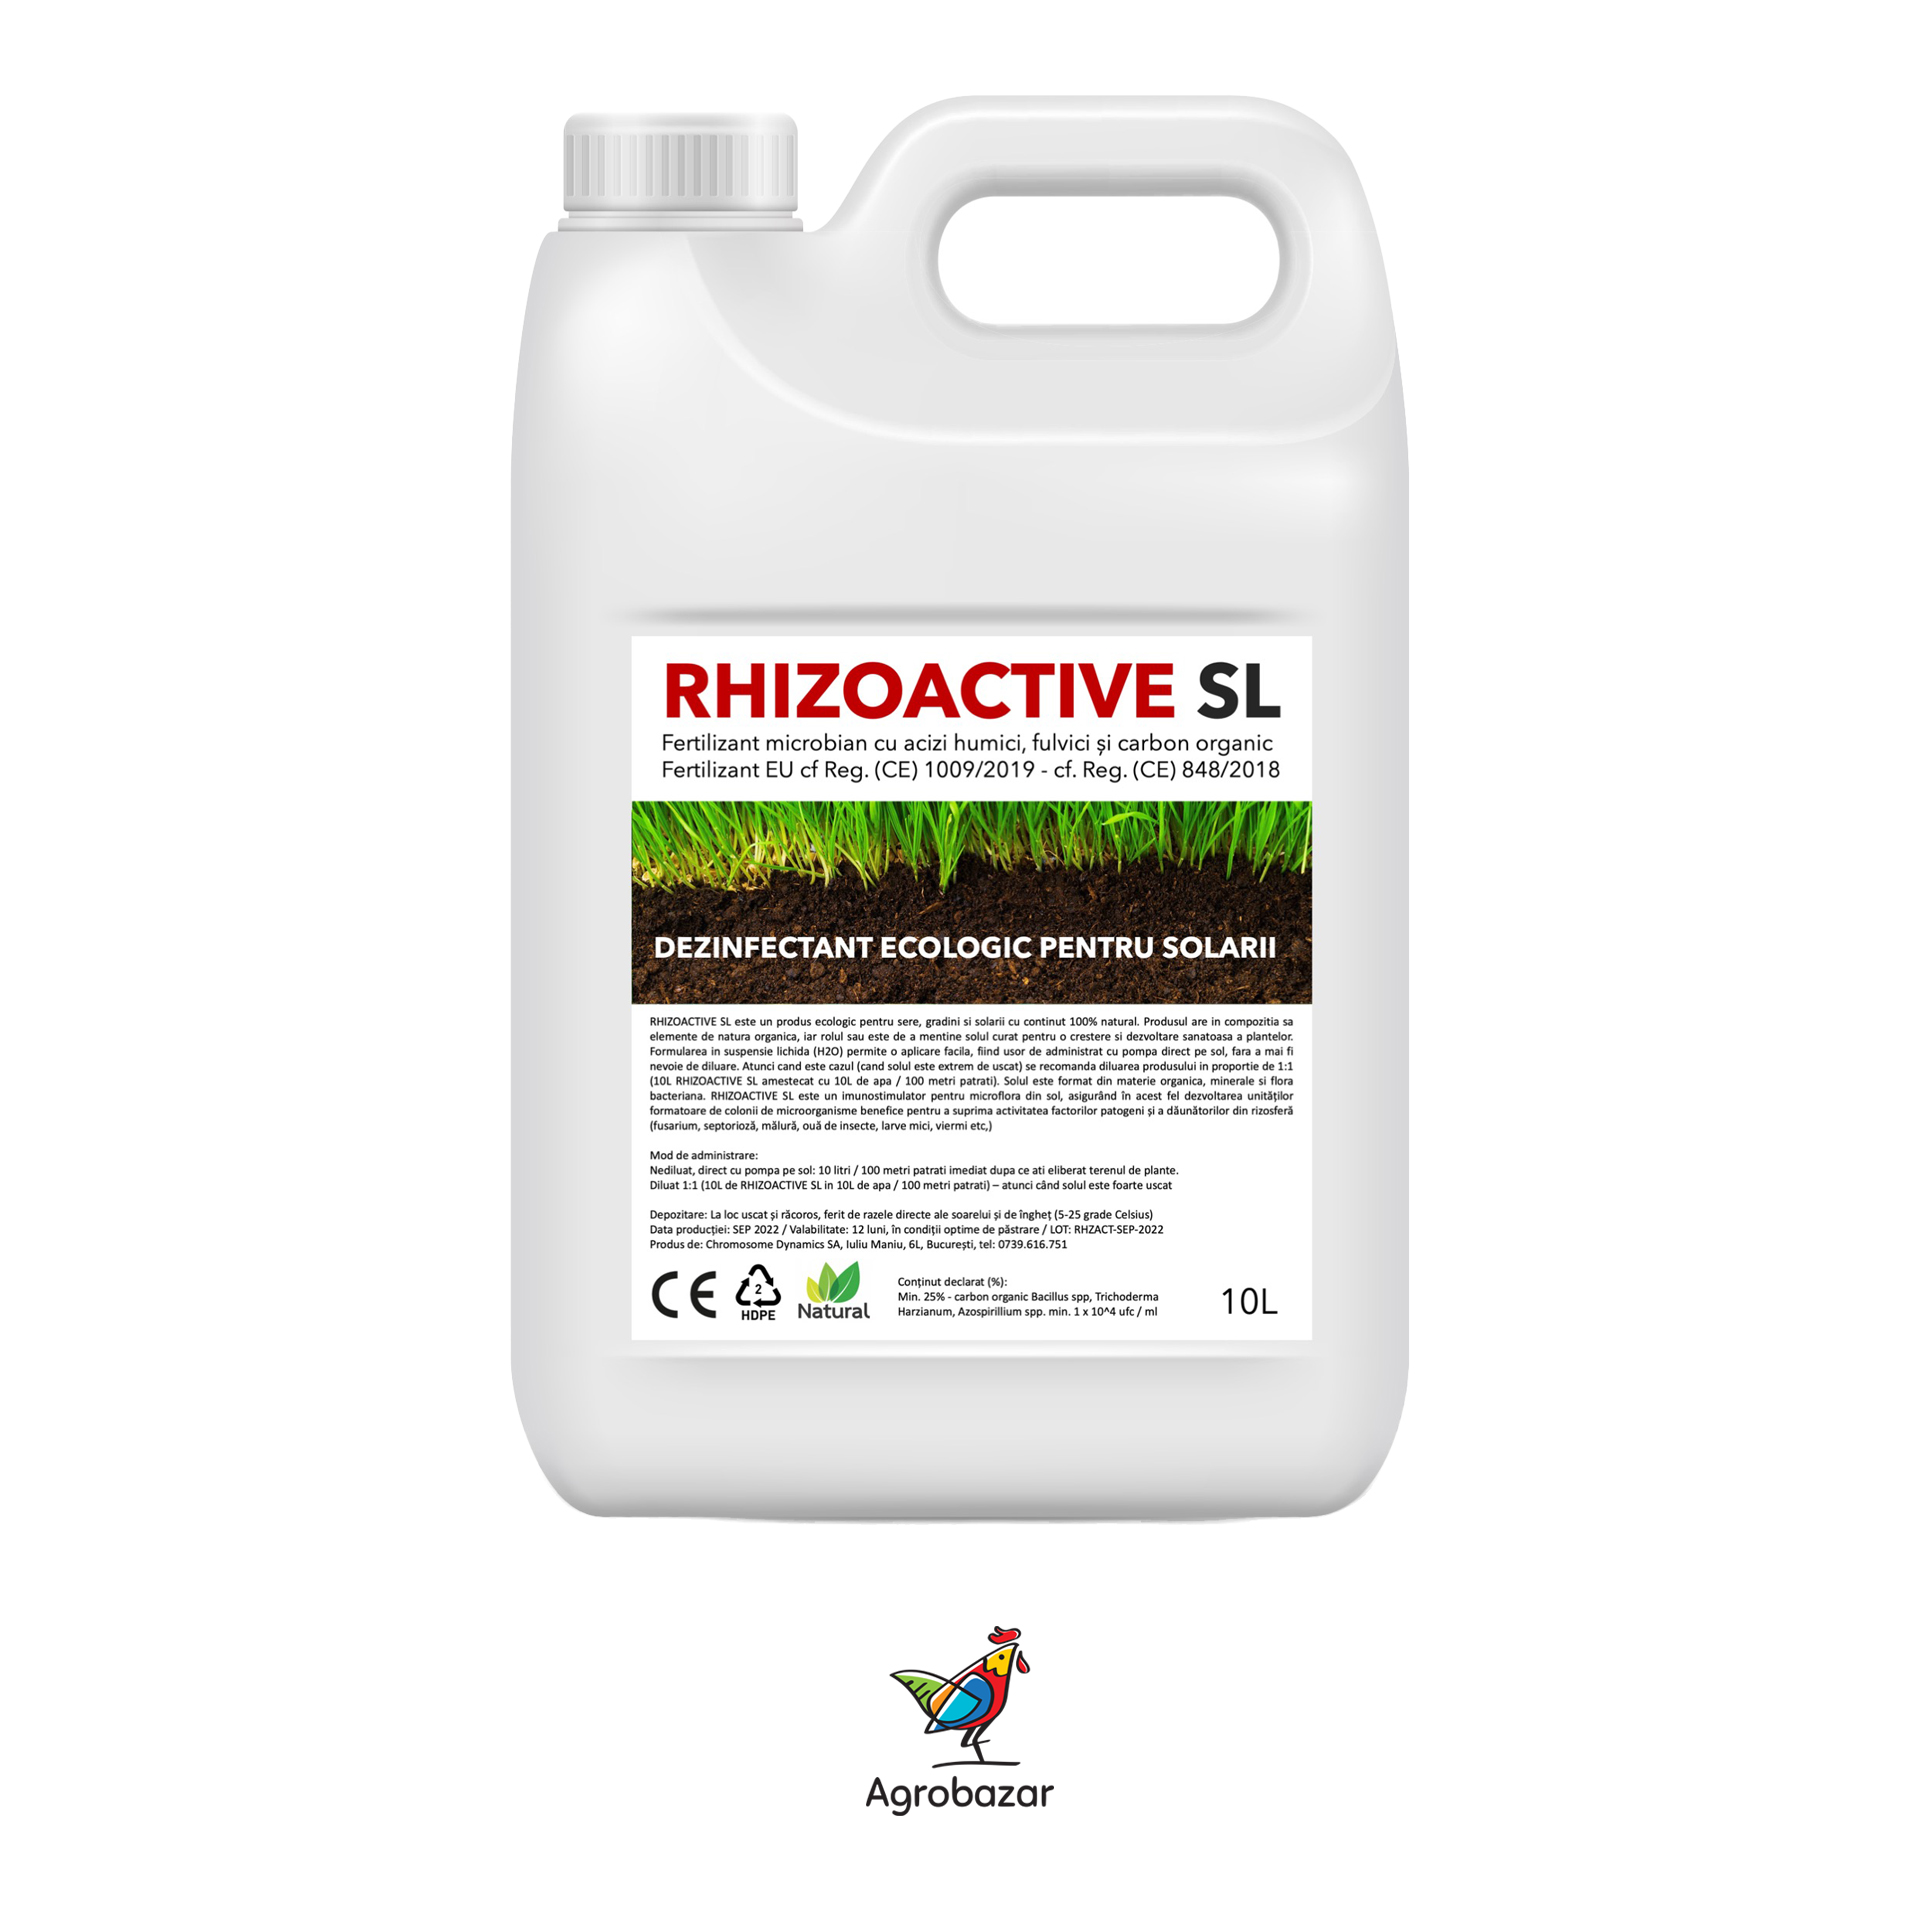 https://www.agrobazar.ro/rhizoactive-sl-fertilizant-microbian-eu-dezinfectant-ecologic-pentru-solarii-10l/